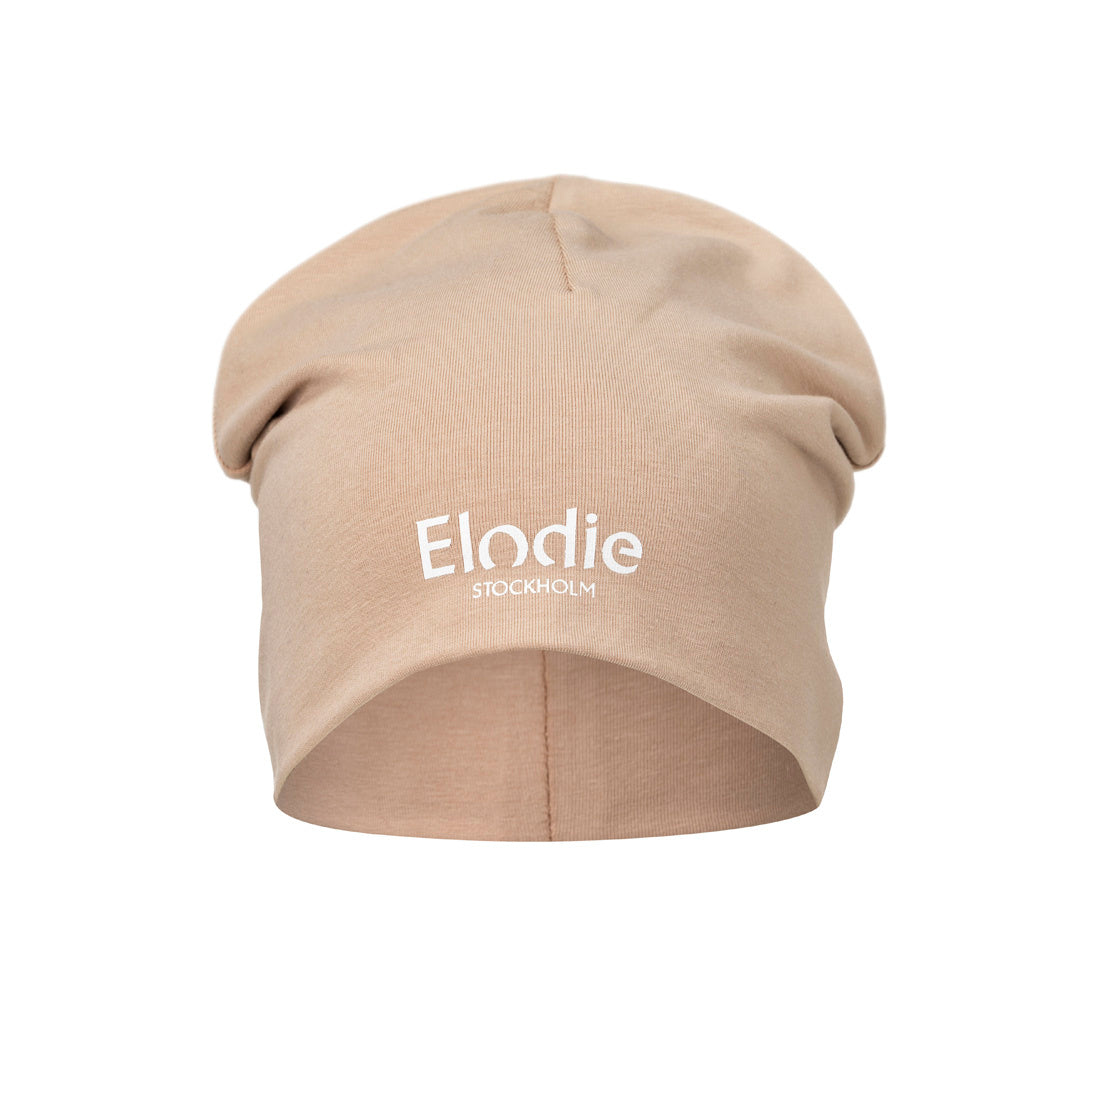 Elodie Details - Czapka - Blushing Pink - 1-2 lata